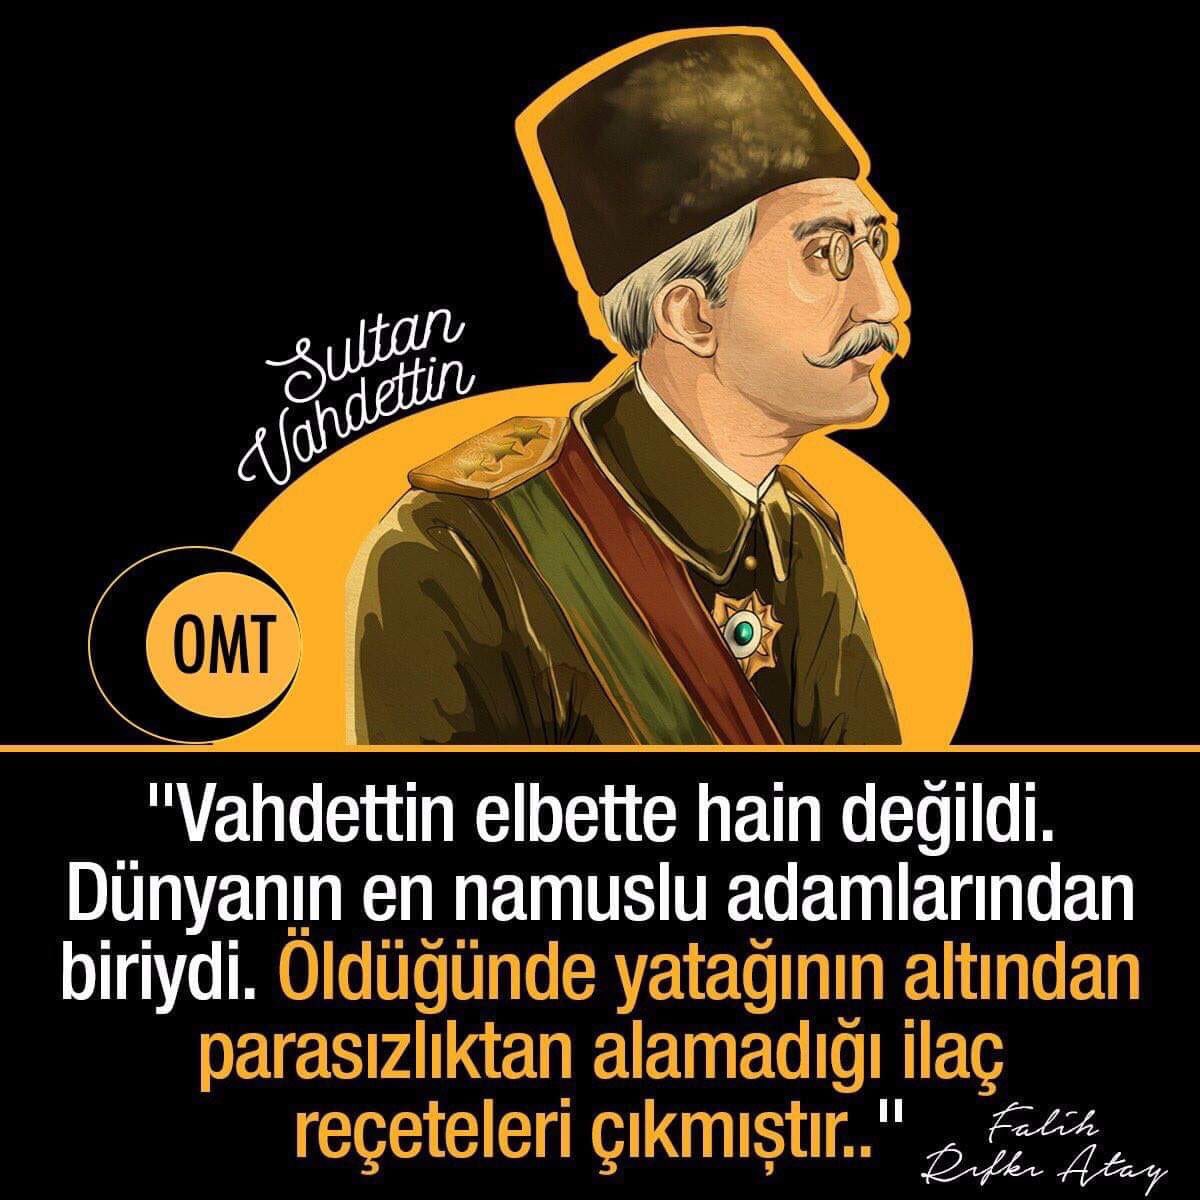 🇹🇷🇹🇷🇹🇷 19 Mayıs 1919 un kahramanlarından Sultan Vahidettini ölüm yıldönümü olması hasebiyle saygıyla rahmetle yad ediyorum. Sana sürgünü reva görenleri Allaha havale ediyorum @Emine2618 @hulya_koprulu @limonii___ @gulsummozden @kareas7166 @mev_iza_